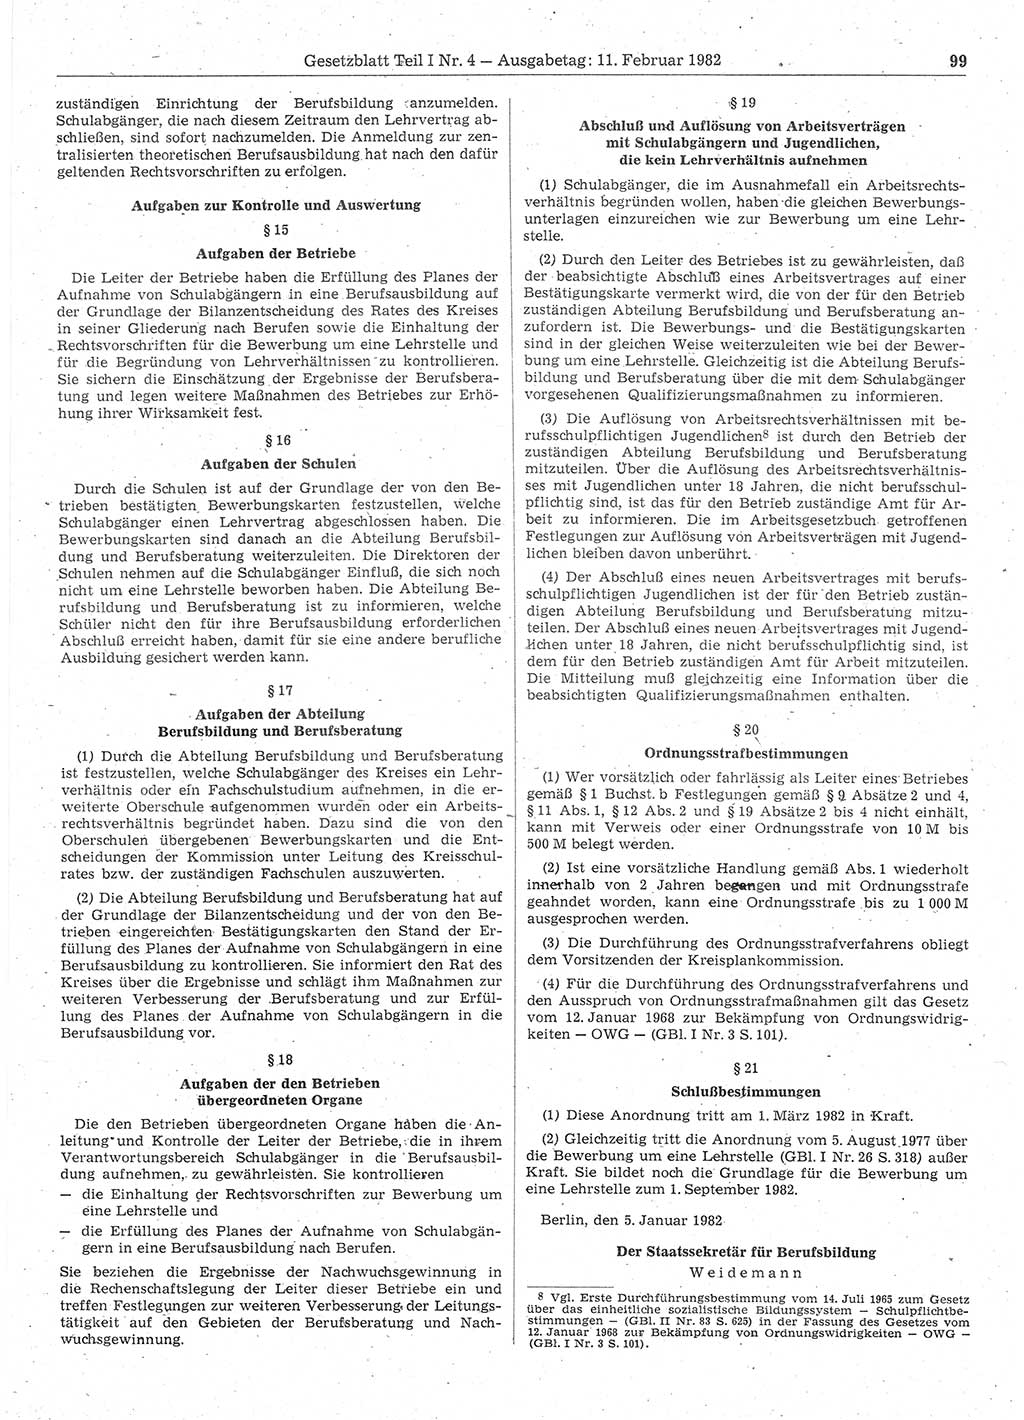 Gesetzblatt (GBl.) der Deutschen Demokratischen Republik (DDR) Teil Ⅰ 1982, Seite 99 (GBl. DDR Ⅰ 1982, S. 99)